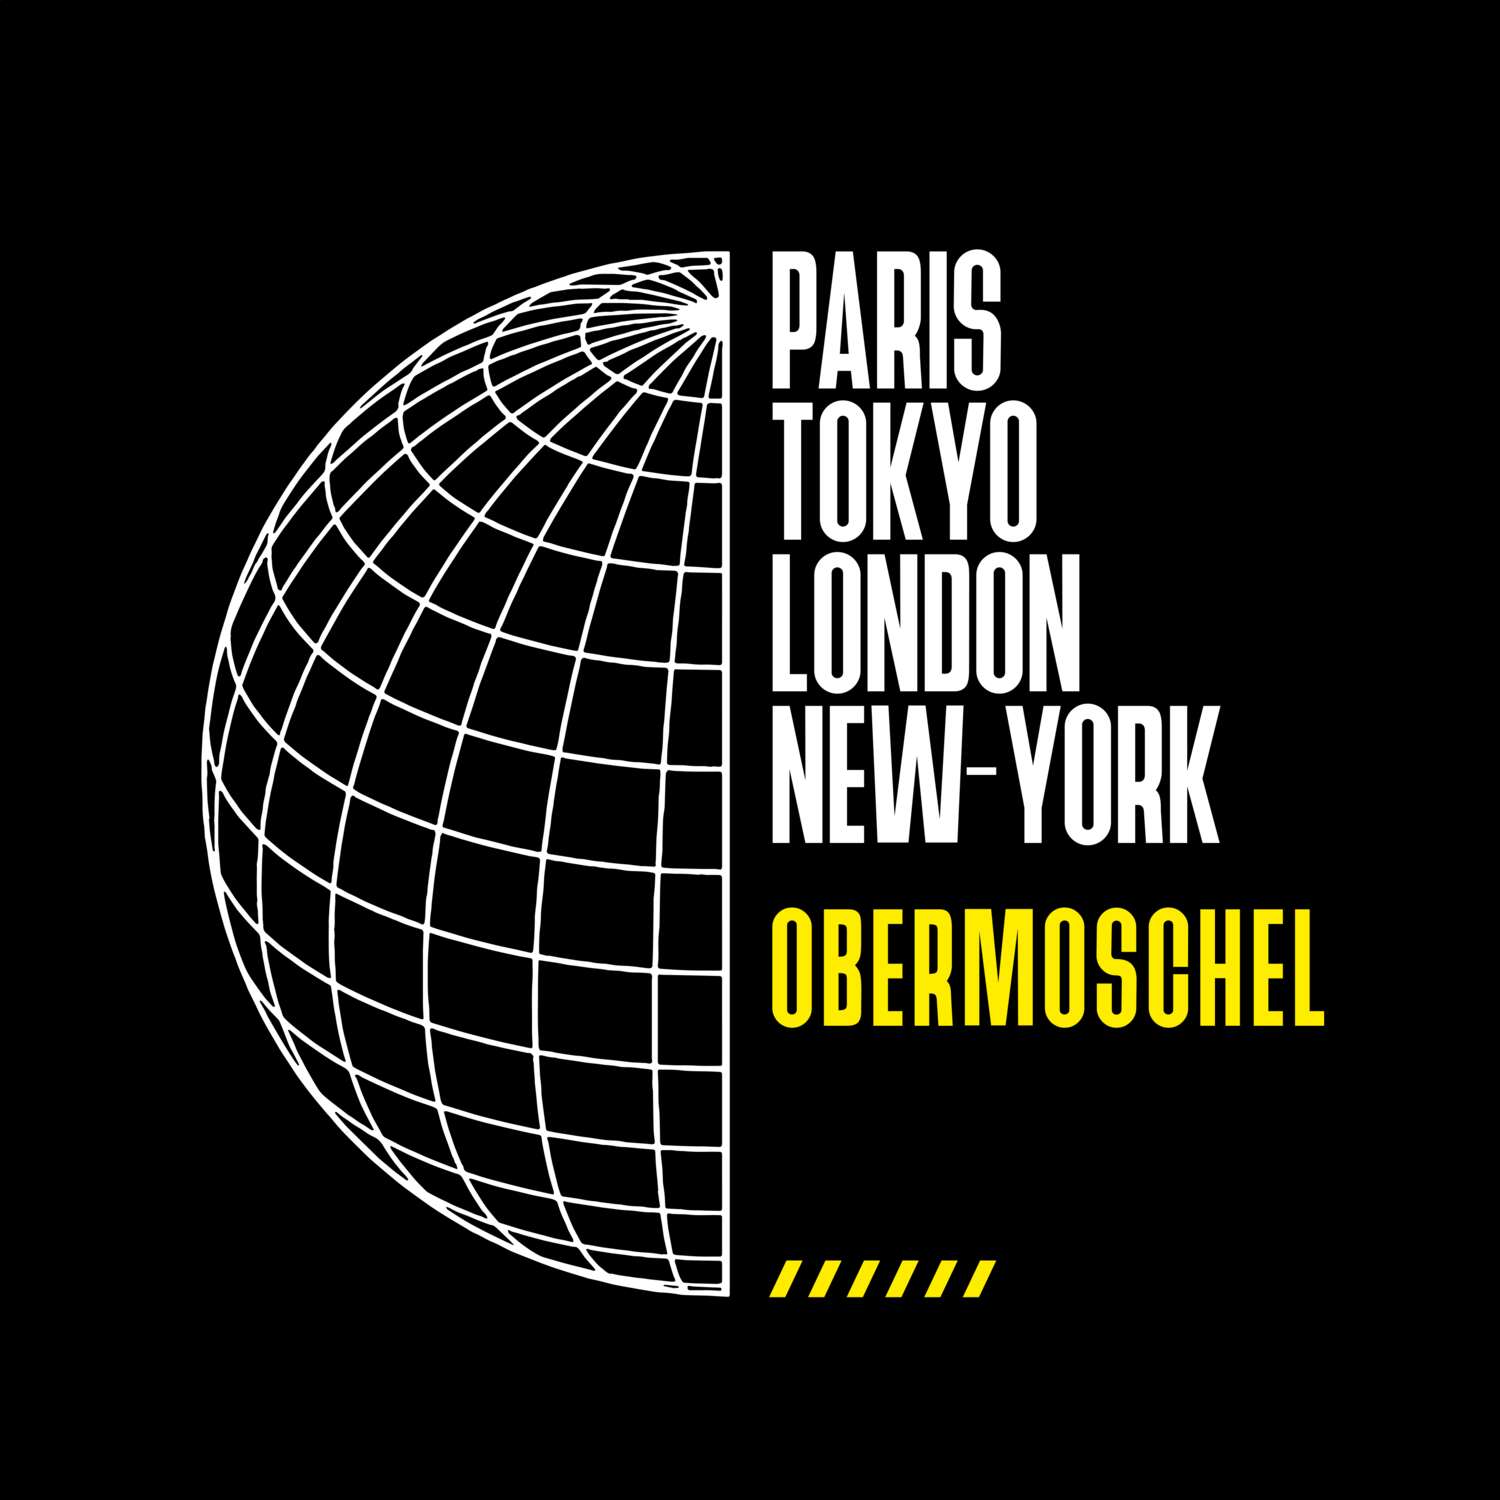 Obermoschel T-Shirt »Paris Tokyo London«